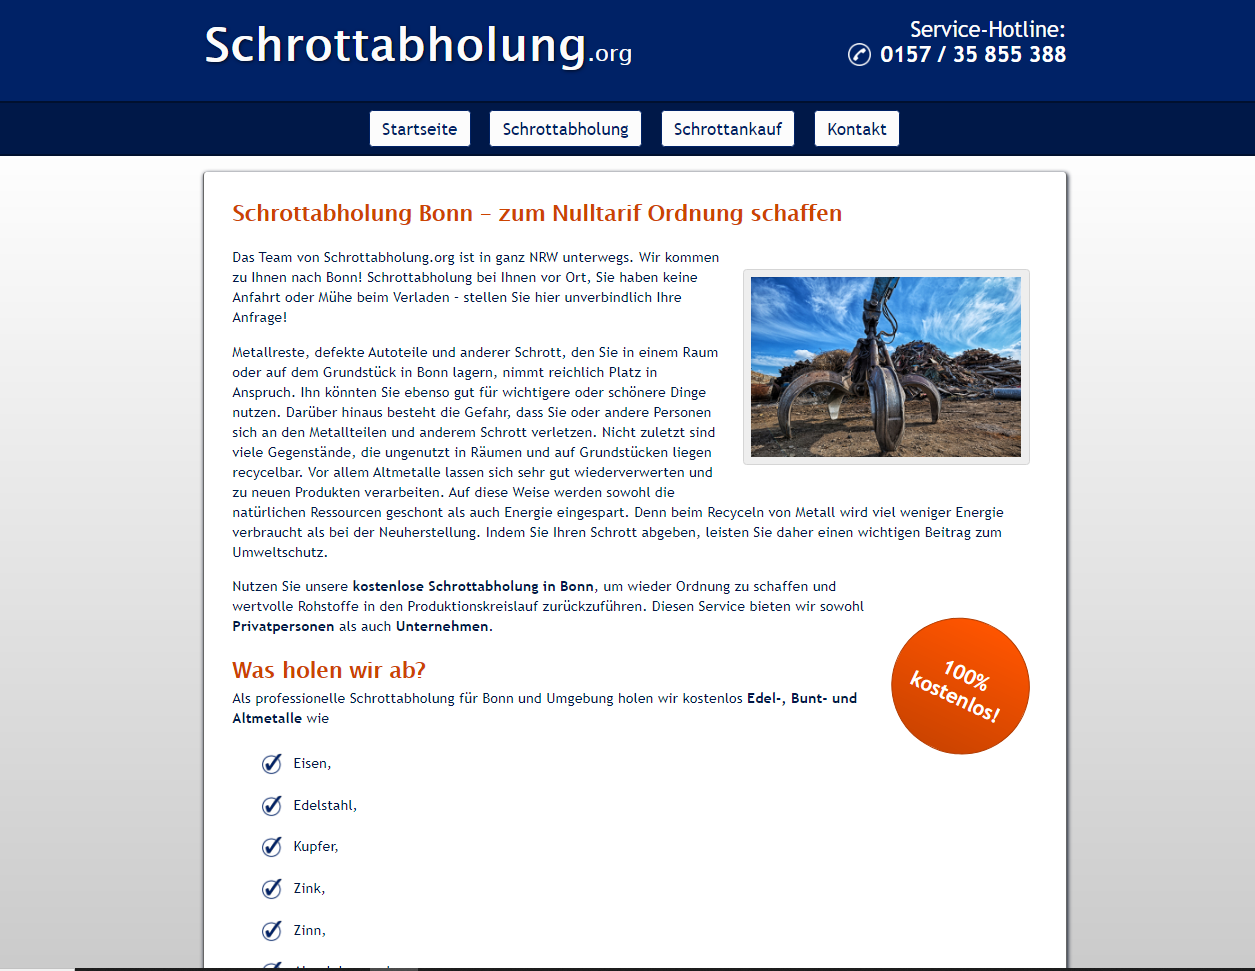 Die Schrottabholung für Bonn: Eine Tätigkeit mit Tradition über Schrottabholung.org